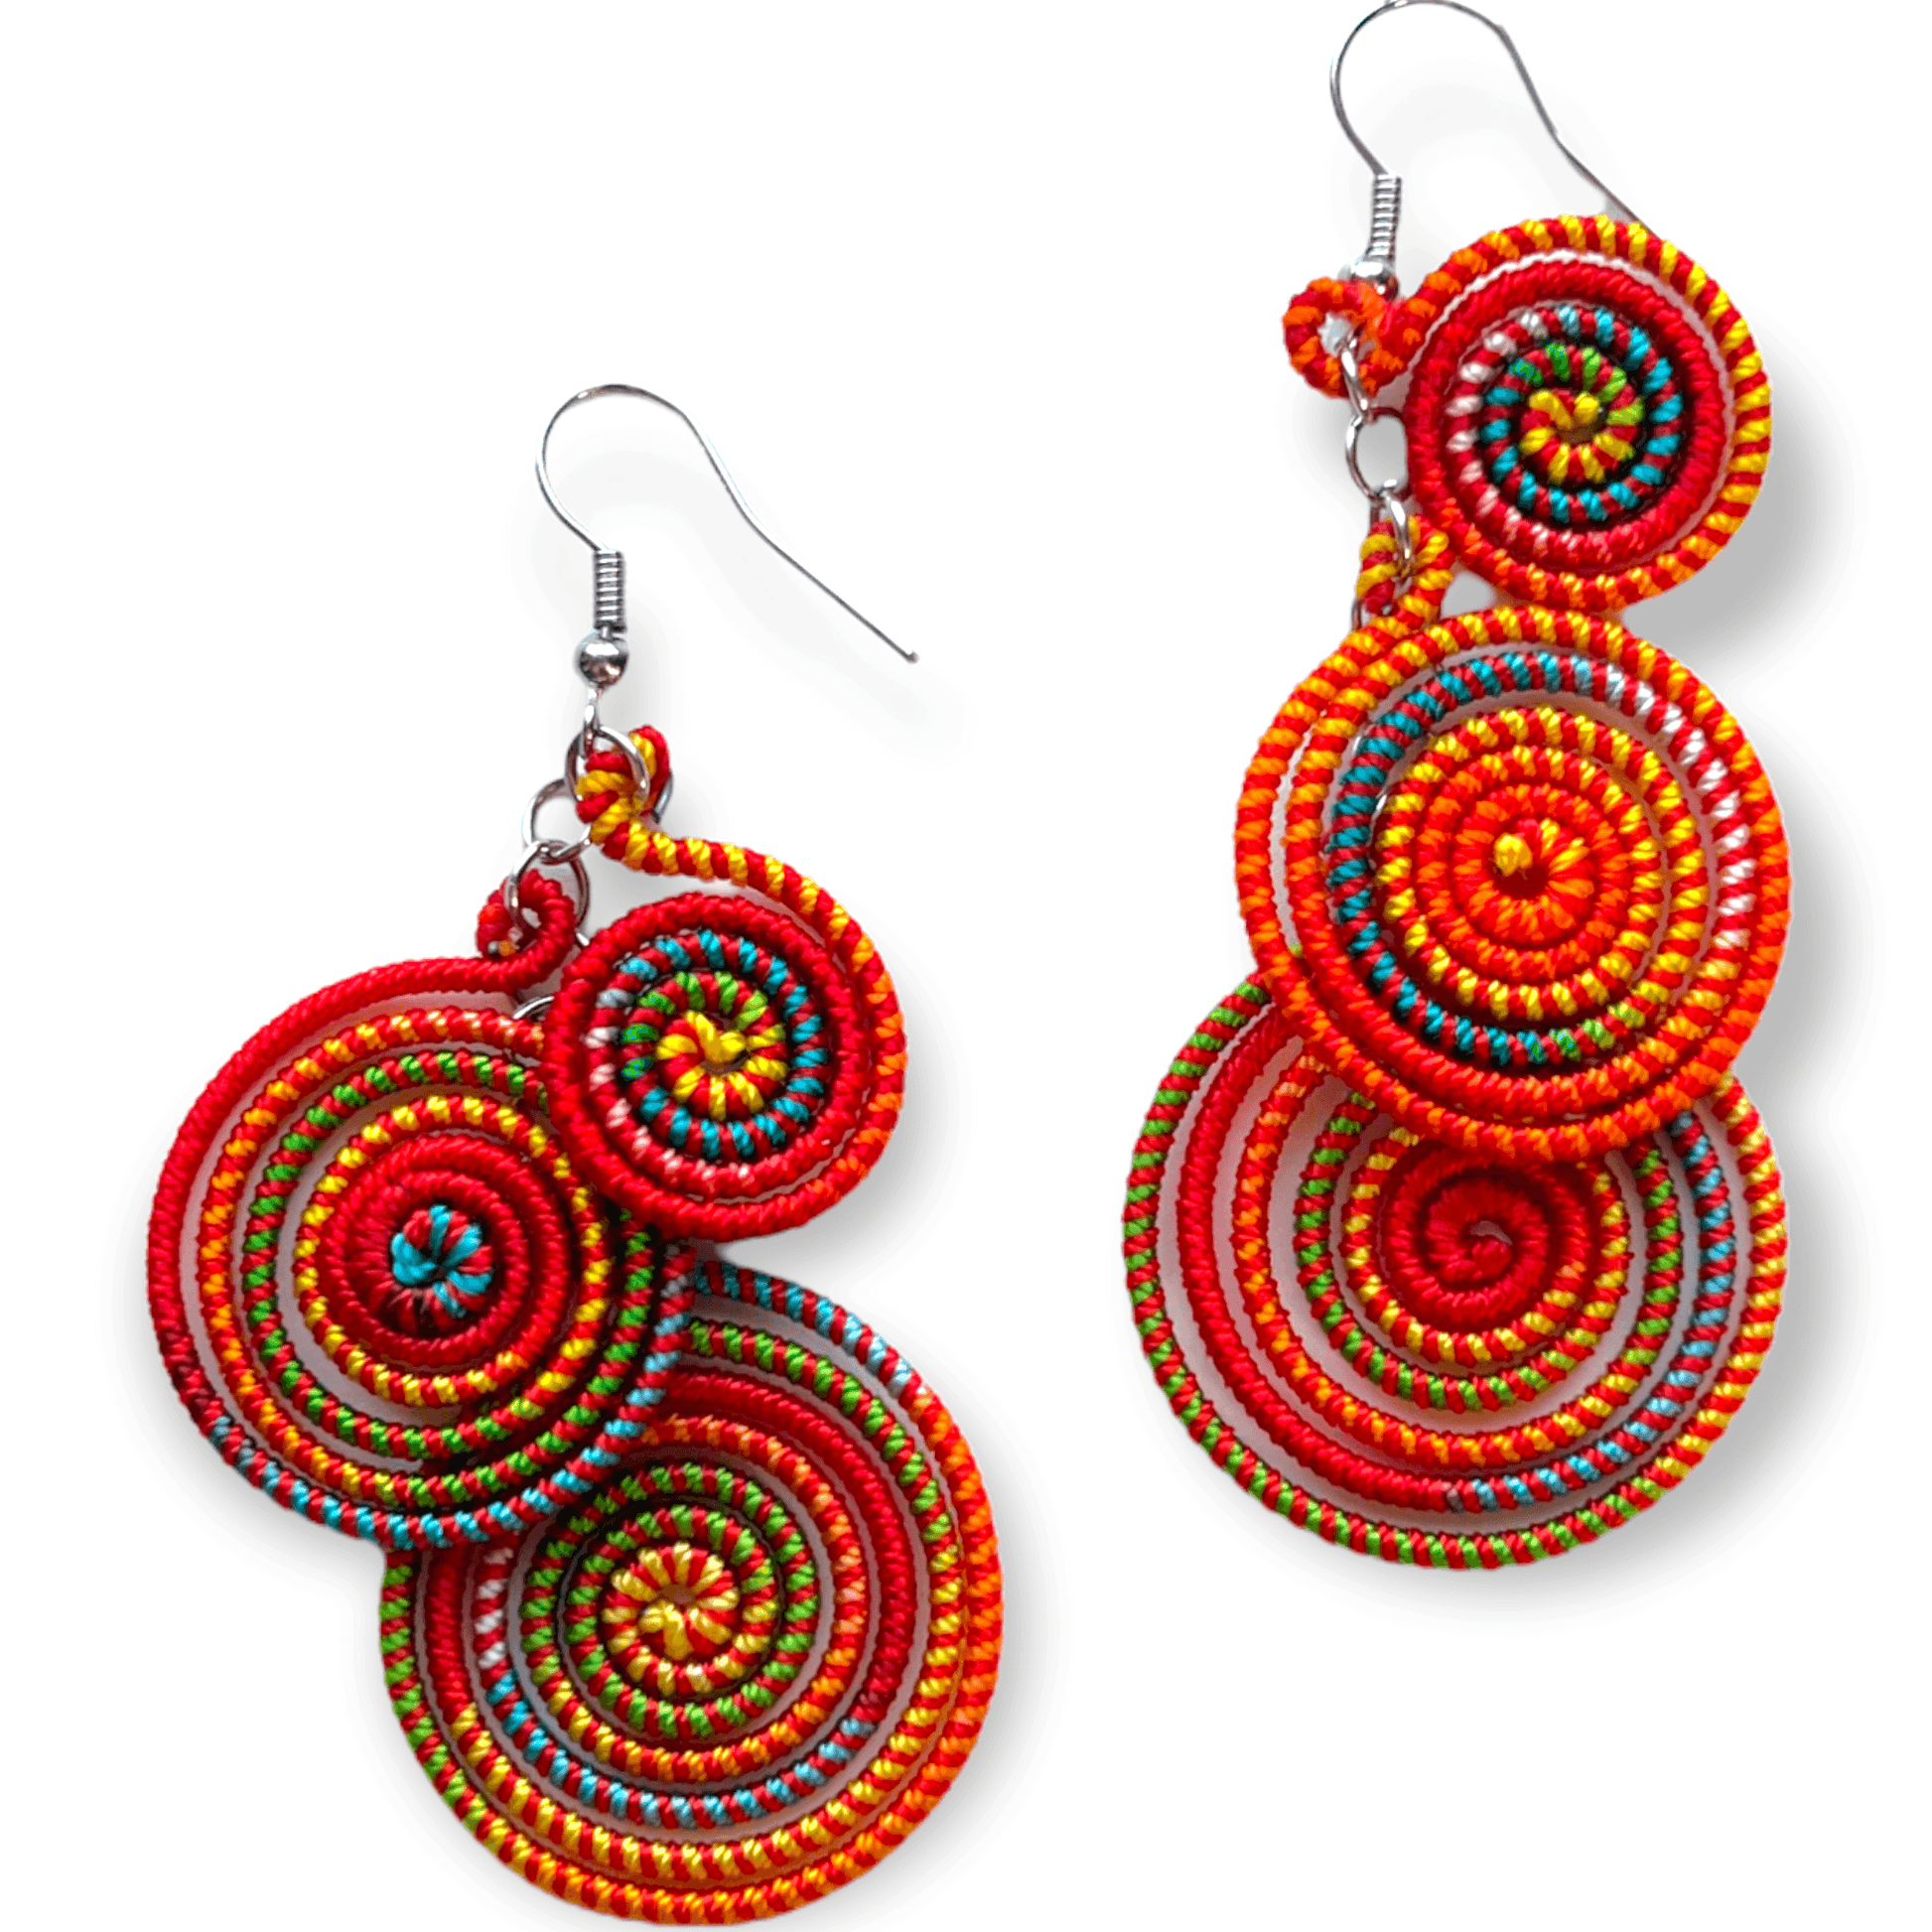 Spiral fan drop earrings that pop with color - Sundara Joon